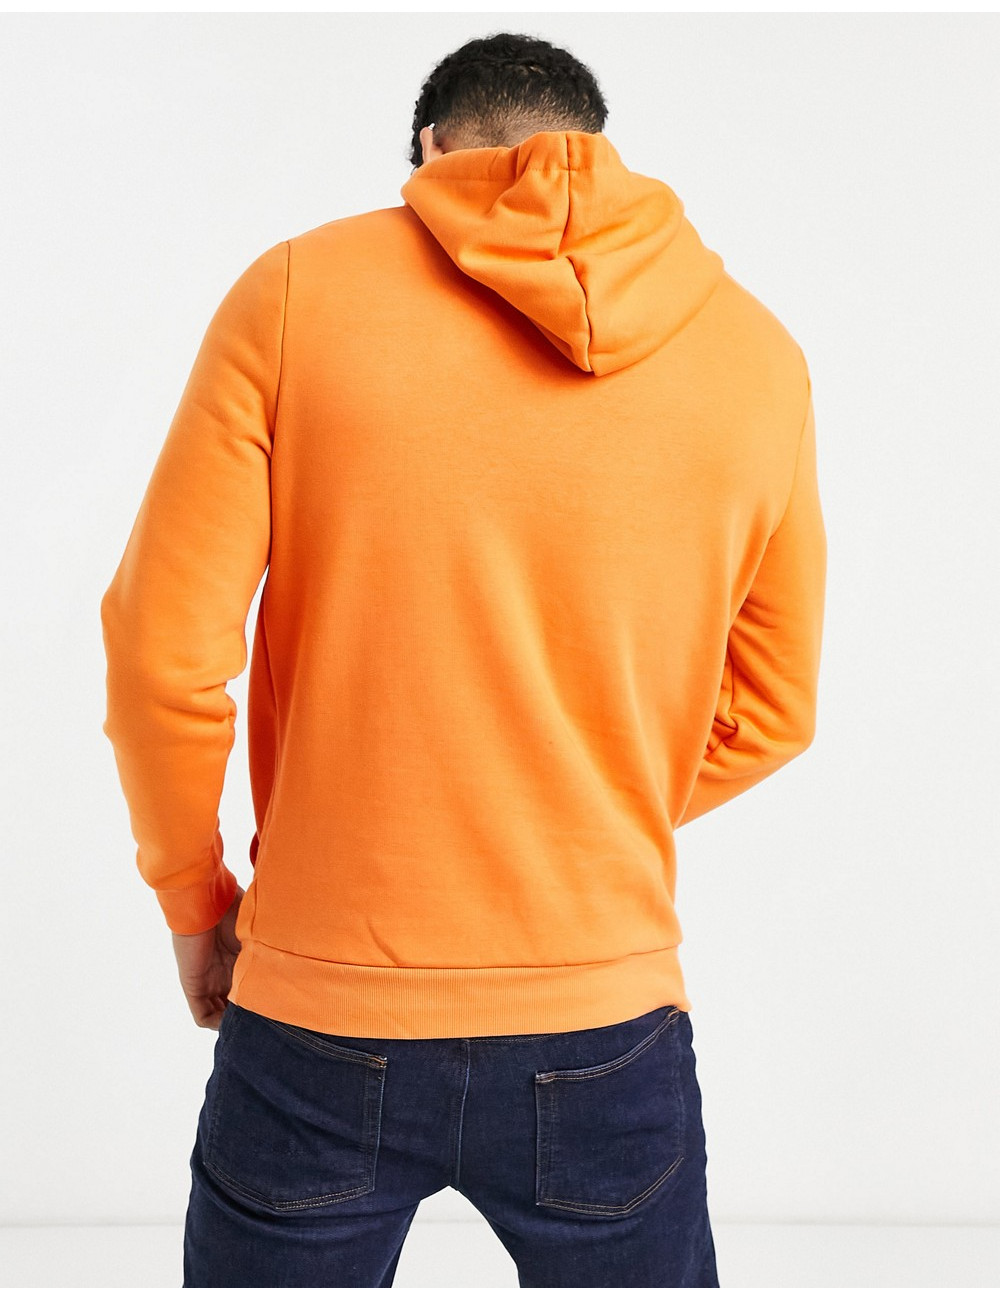 River Island hoodie in orange